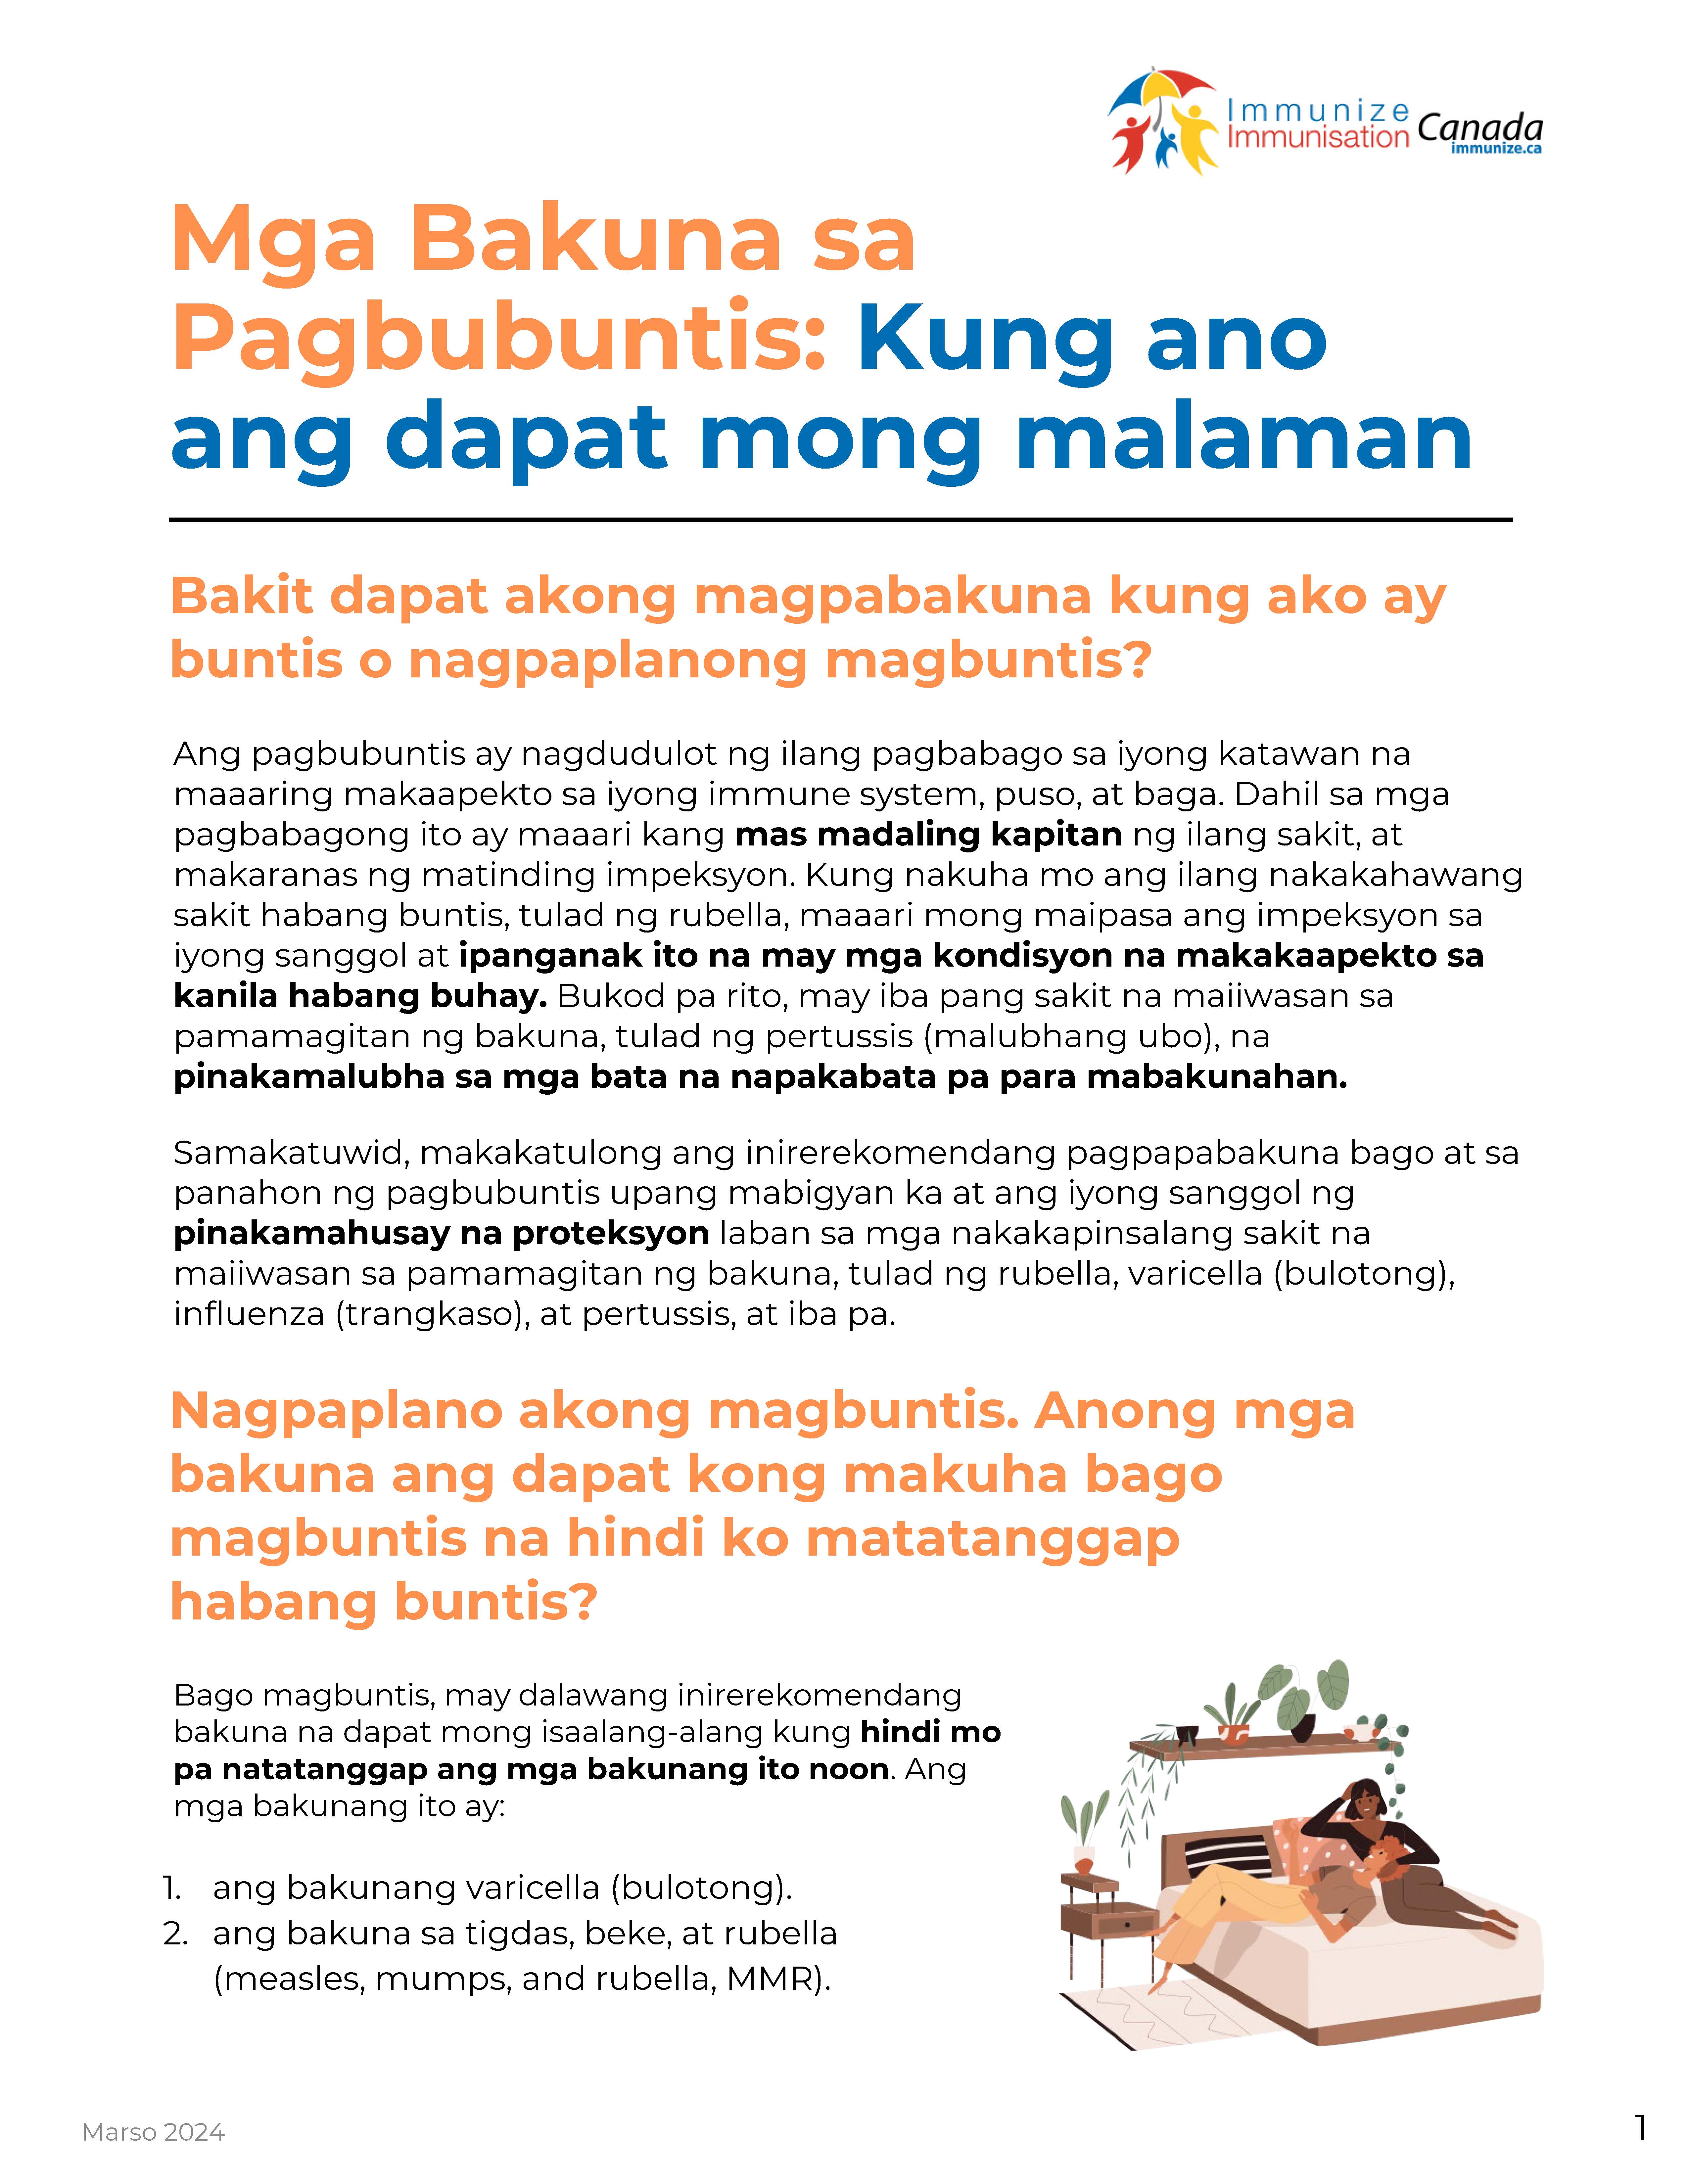 Les vaccins pendant la grossesse : ce qu'il faut savoir (feuillet de renseignements en tagalog)